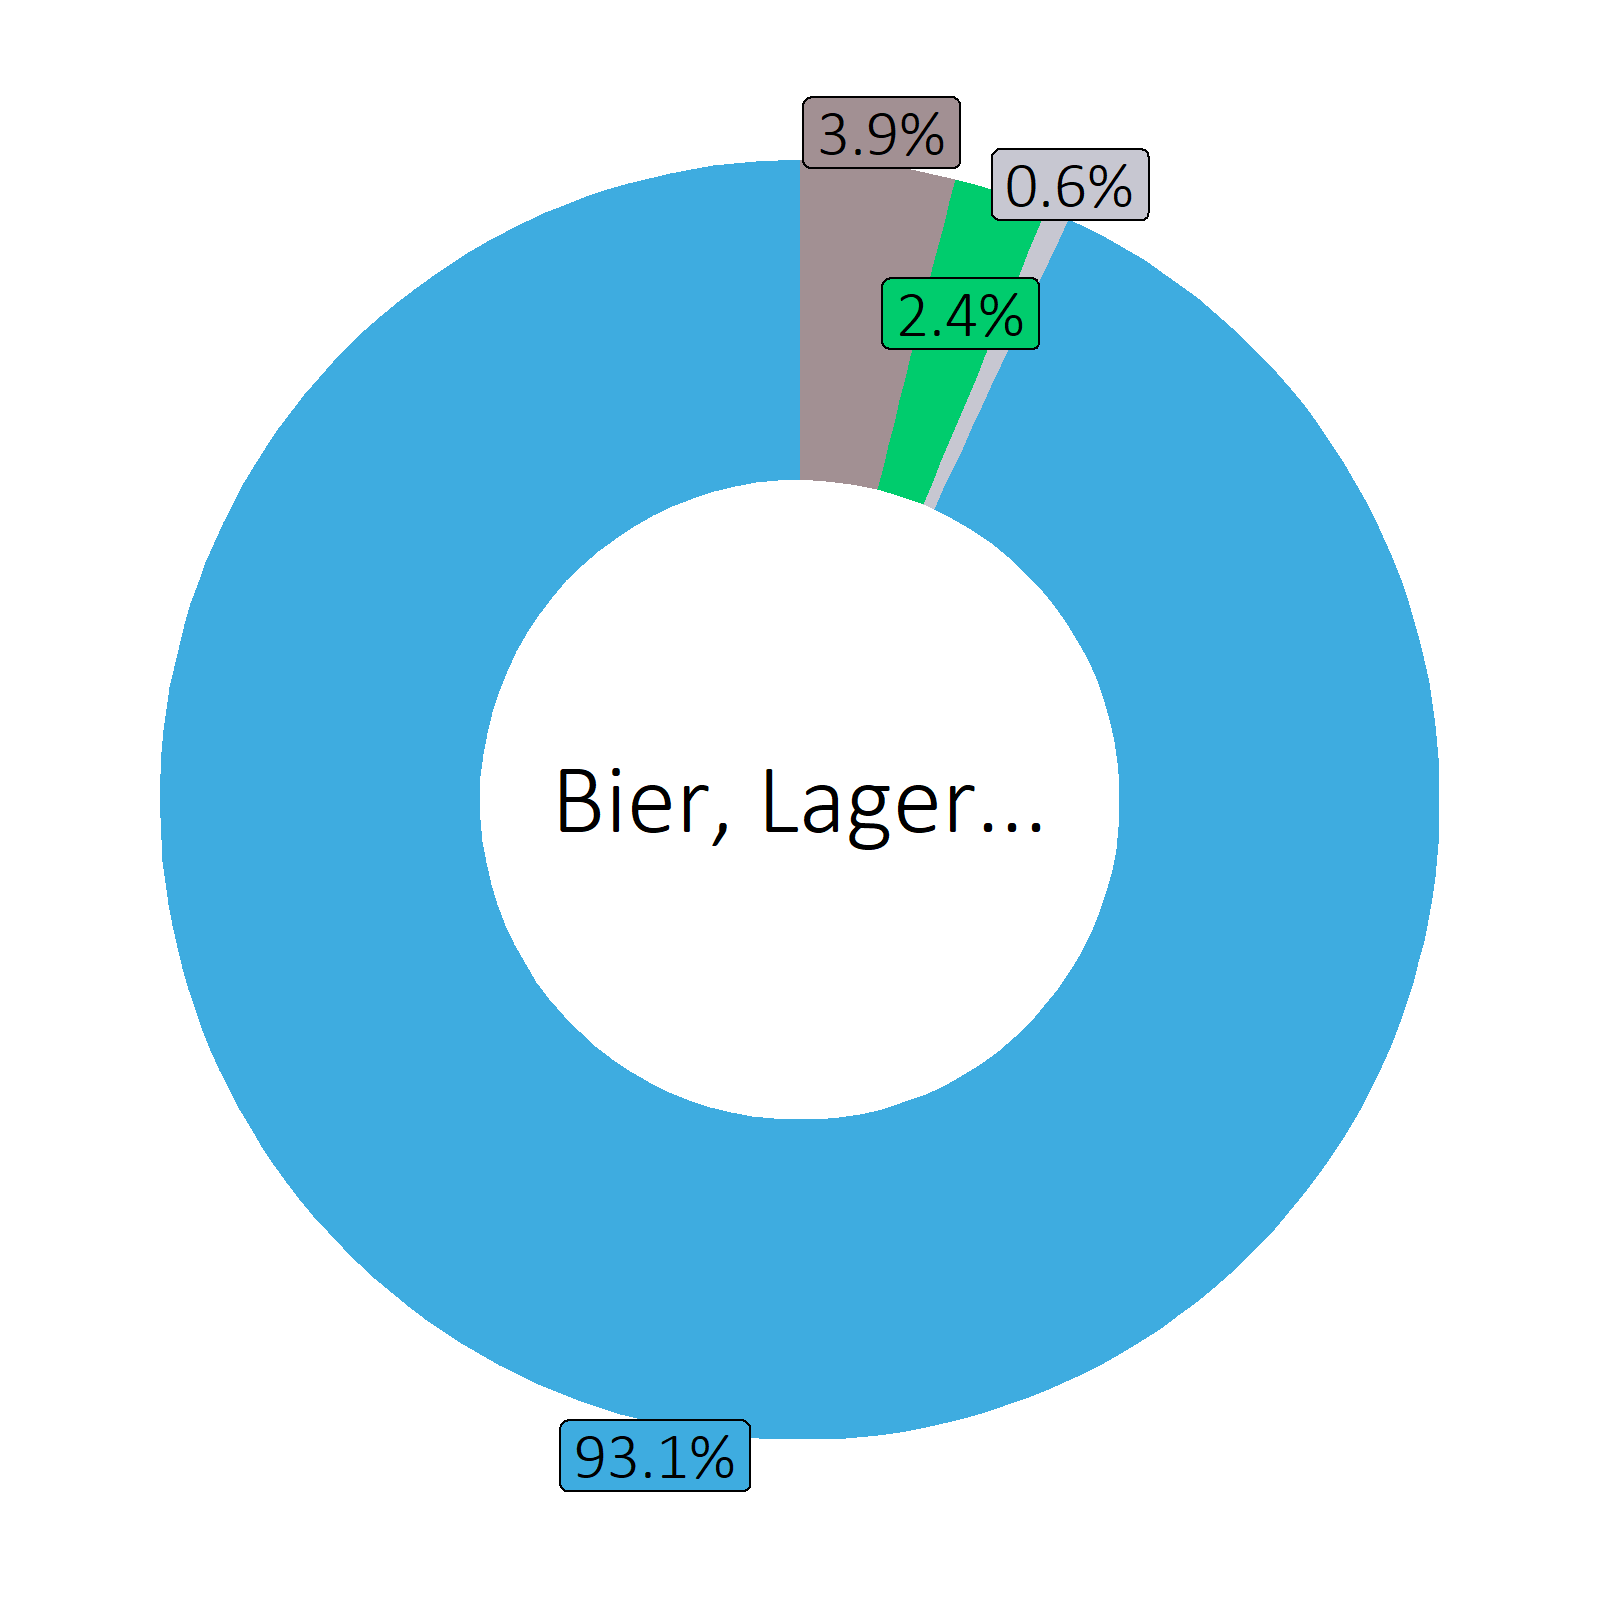 Bestandteile Bier, Lager (Durchschnitt Produktsortiment)